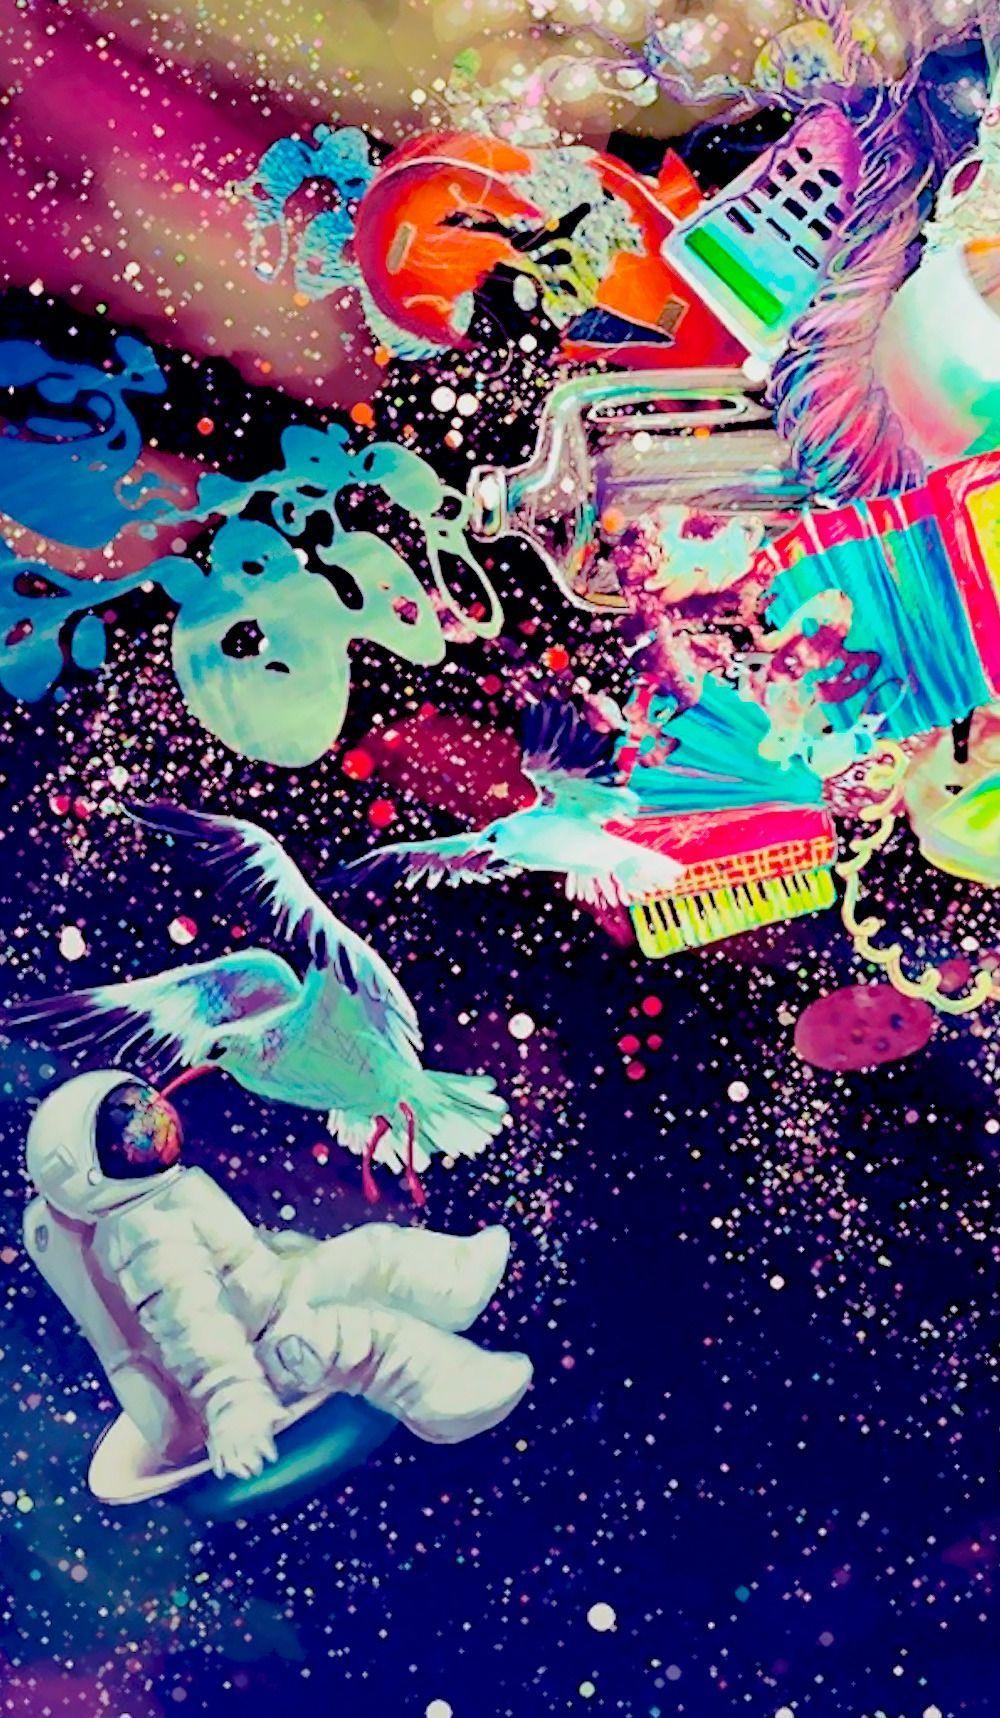 Art. Astronaut. Wallpaper. +Fondos. Astronaut wallpaper